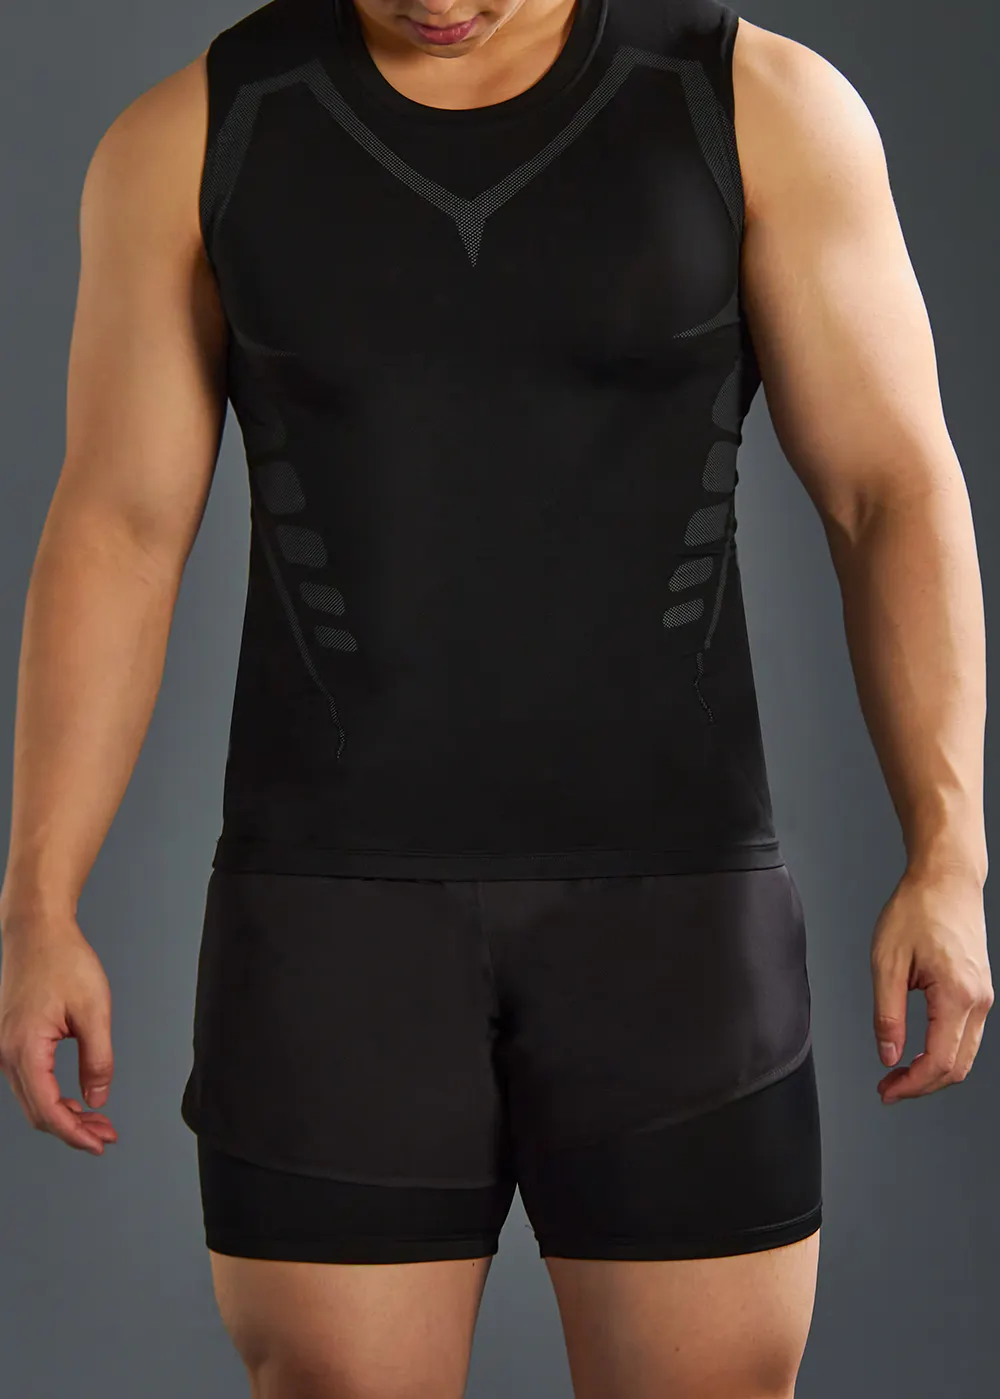 Camiseta de compressão fitness de secagem rápida, roupa esportiva masculina de algodão para treino, academia